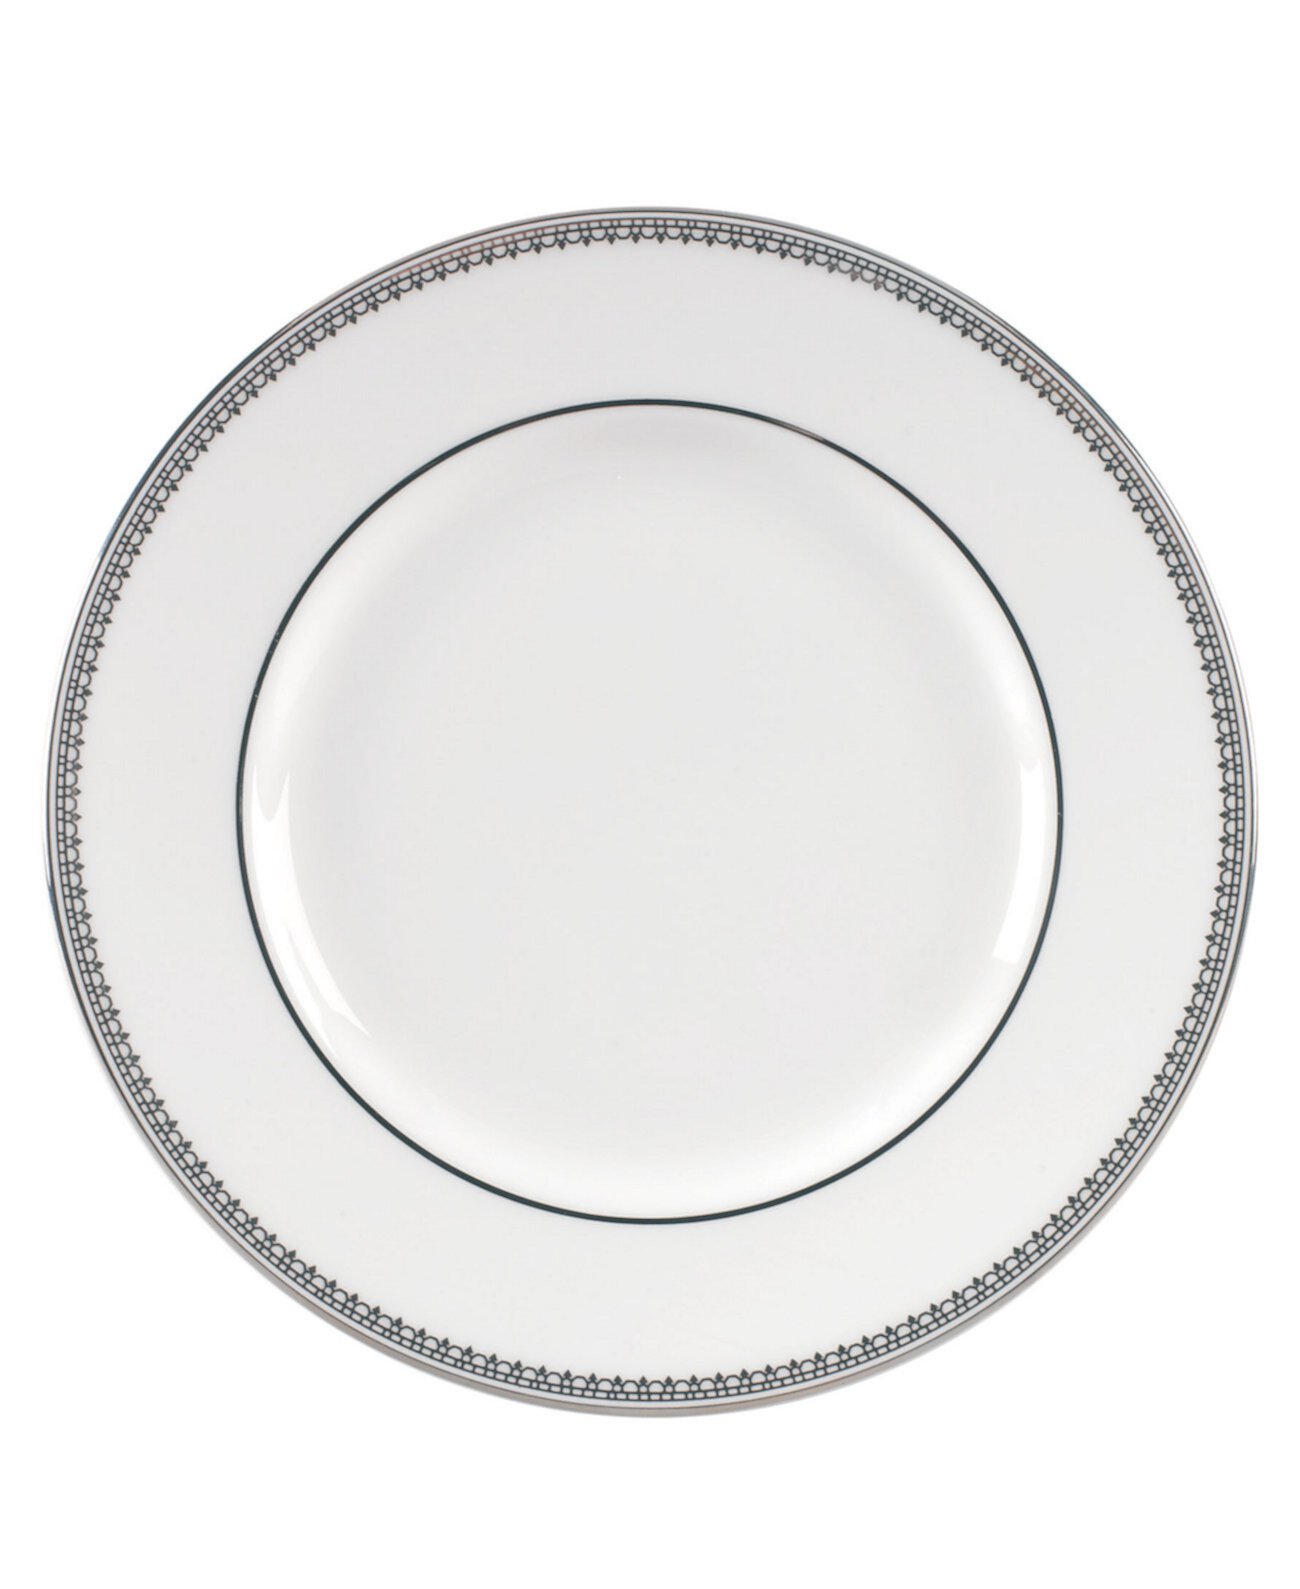 Кружевная тарелка для закусок Vera Wang Wedgwood